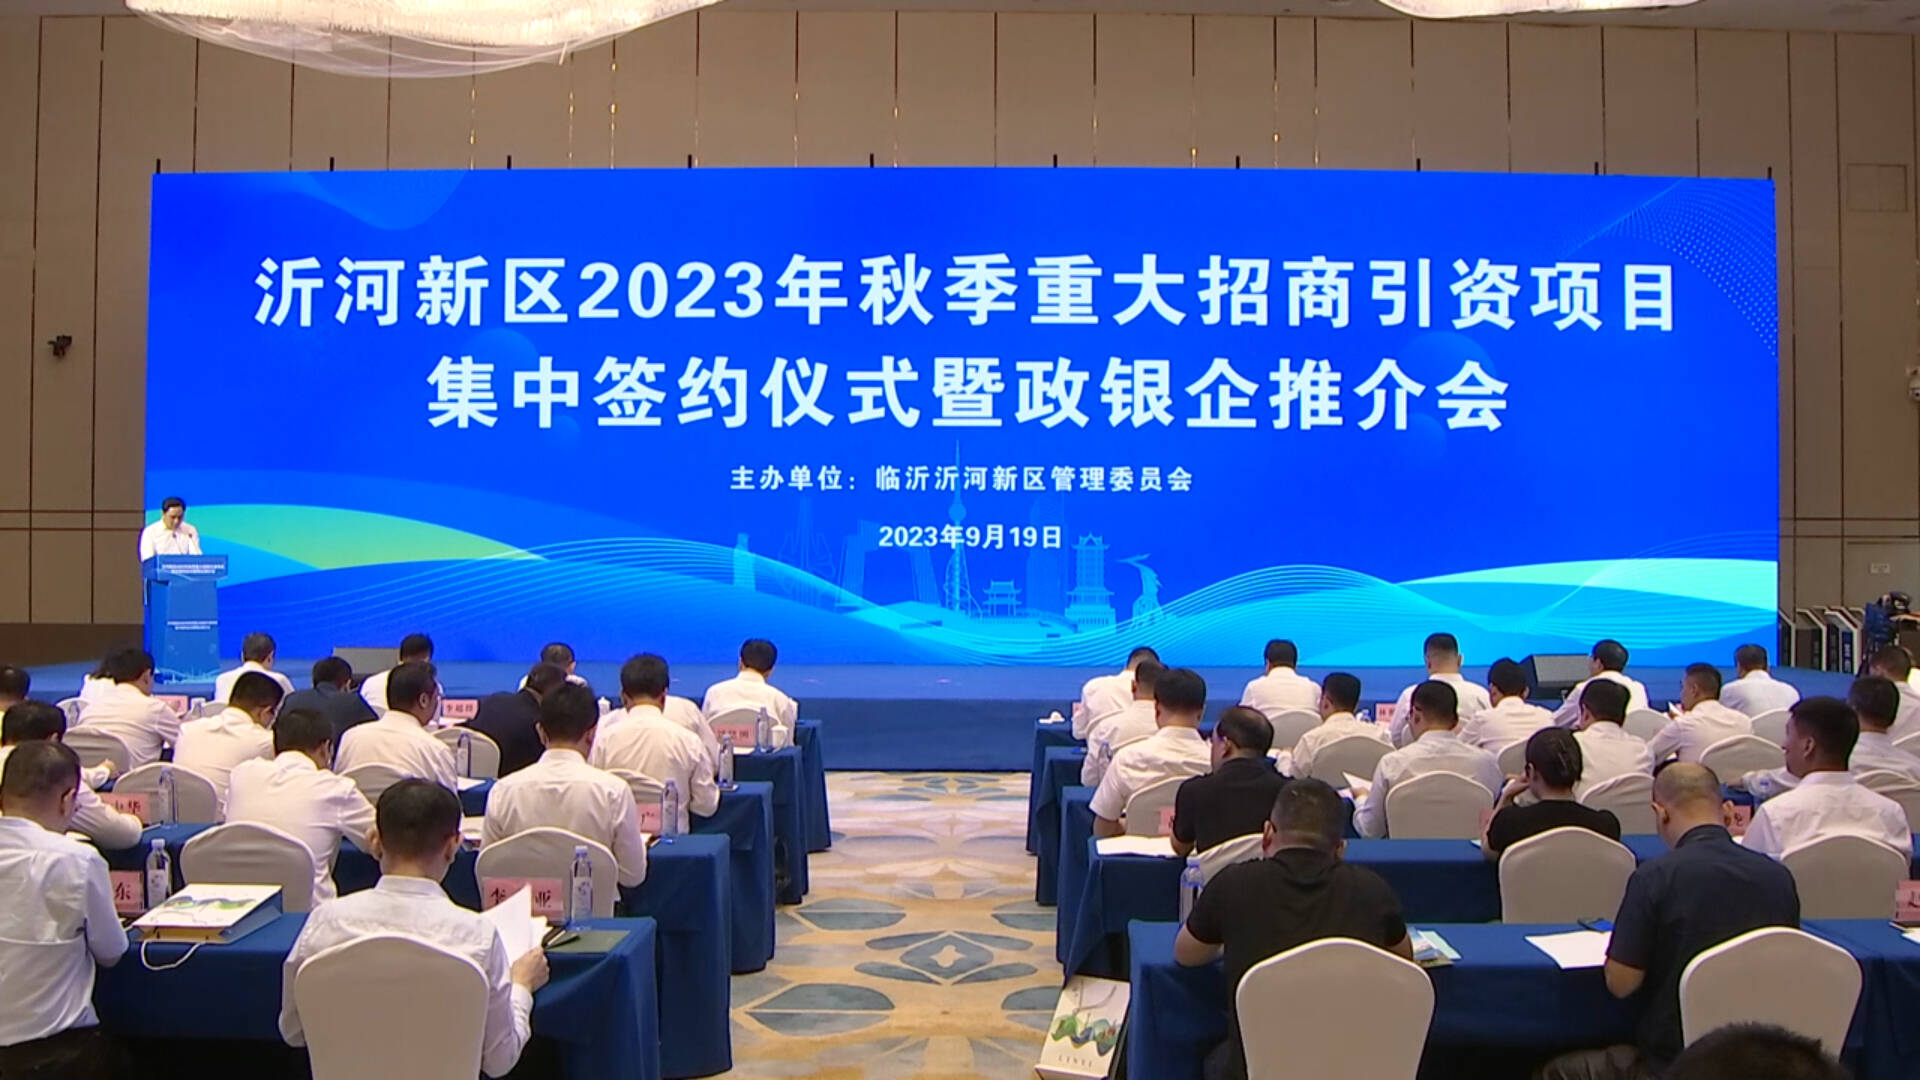 临沂沂河新区2023年秋季重大招商引资项目集中签约 总投资271亿元